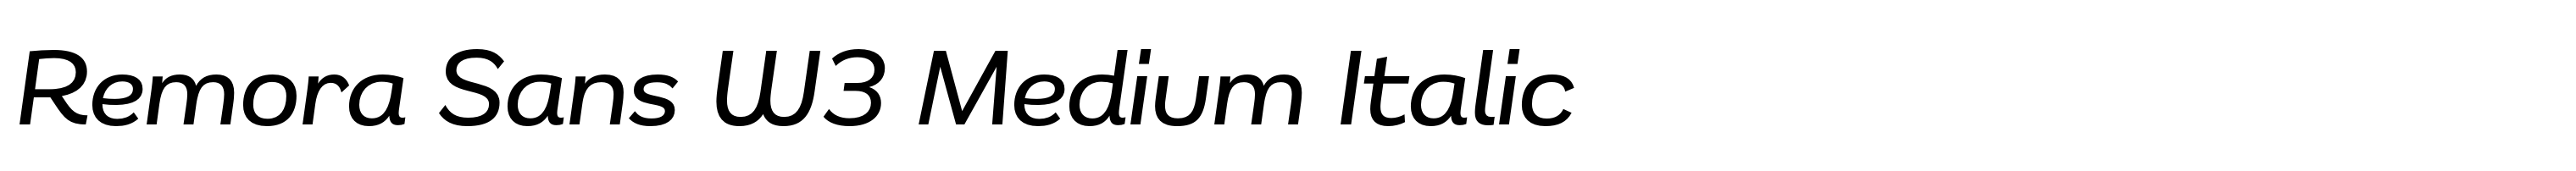 Remora Sans W3 Medium Italic